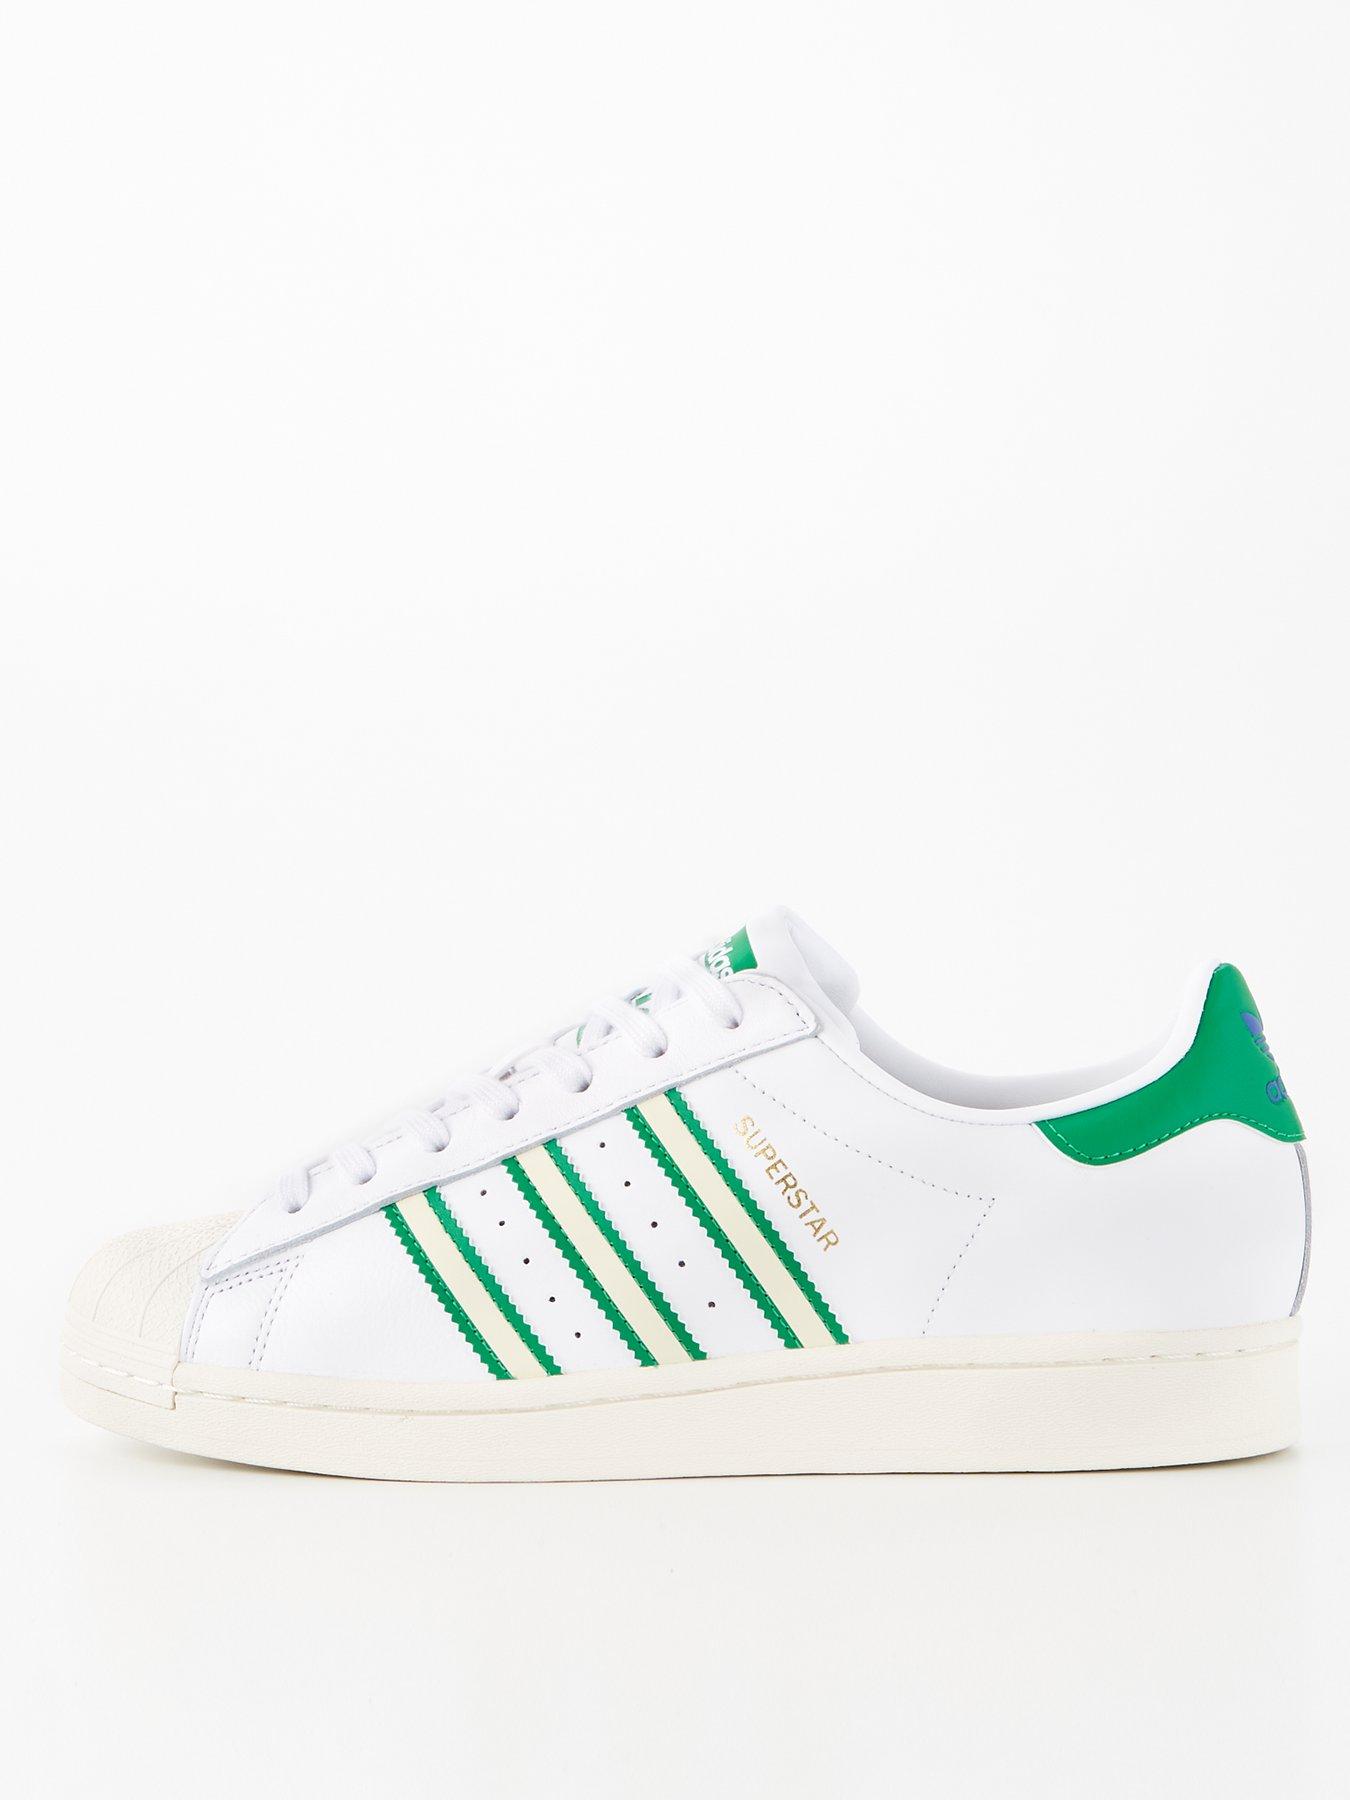 adidas Originals Superstar - White/Green |